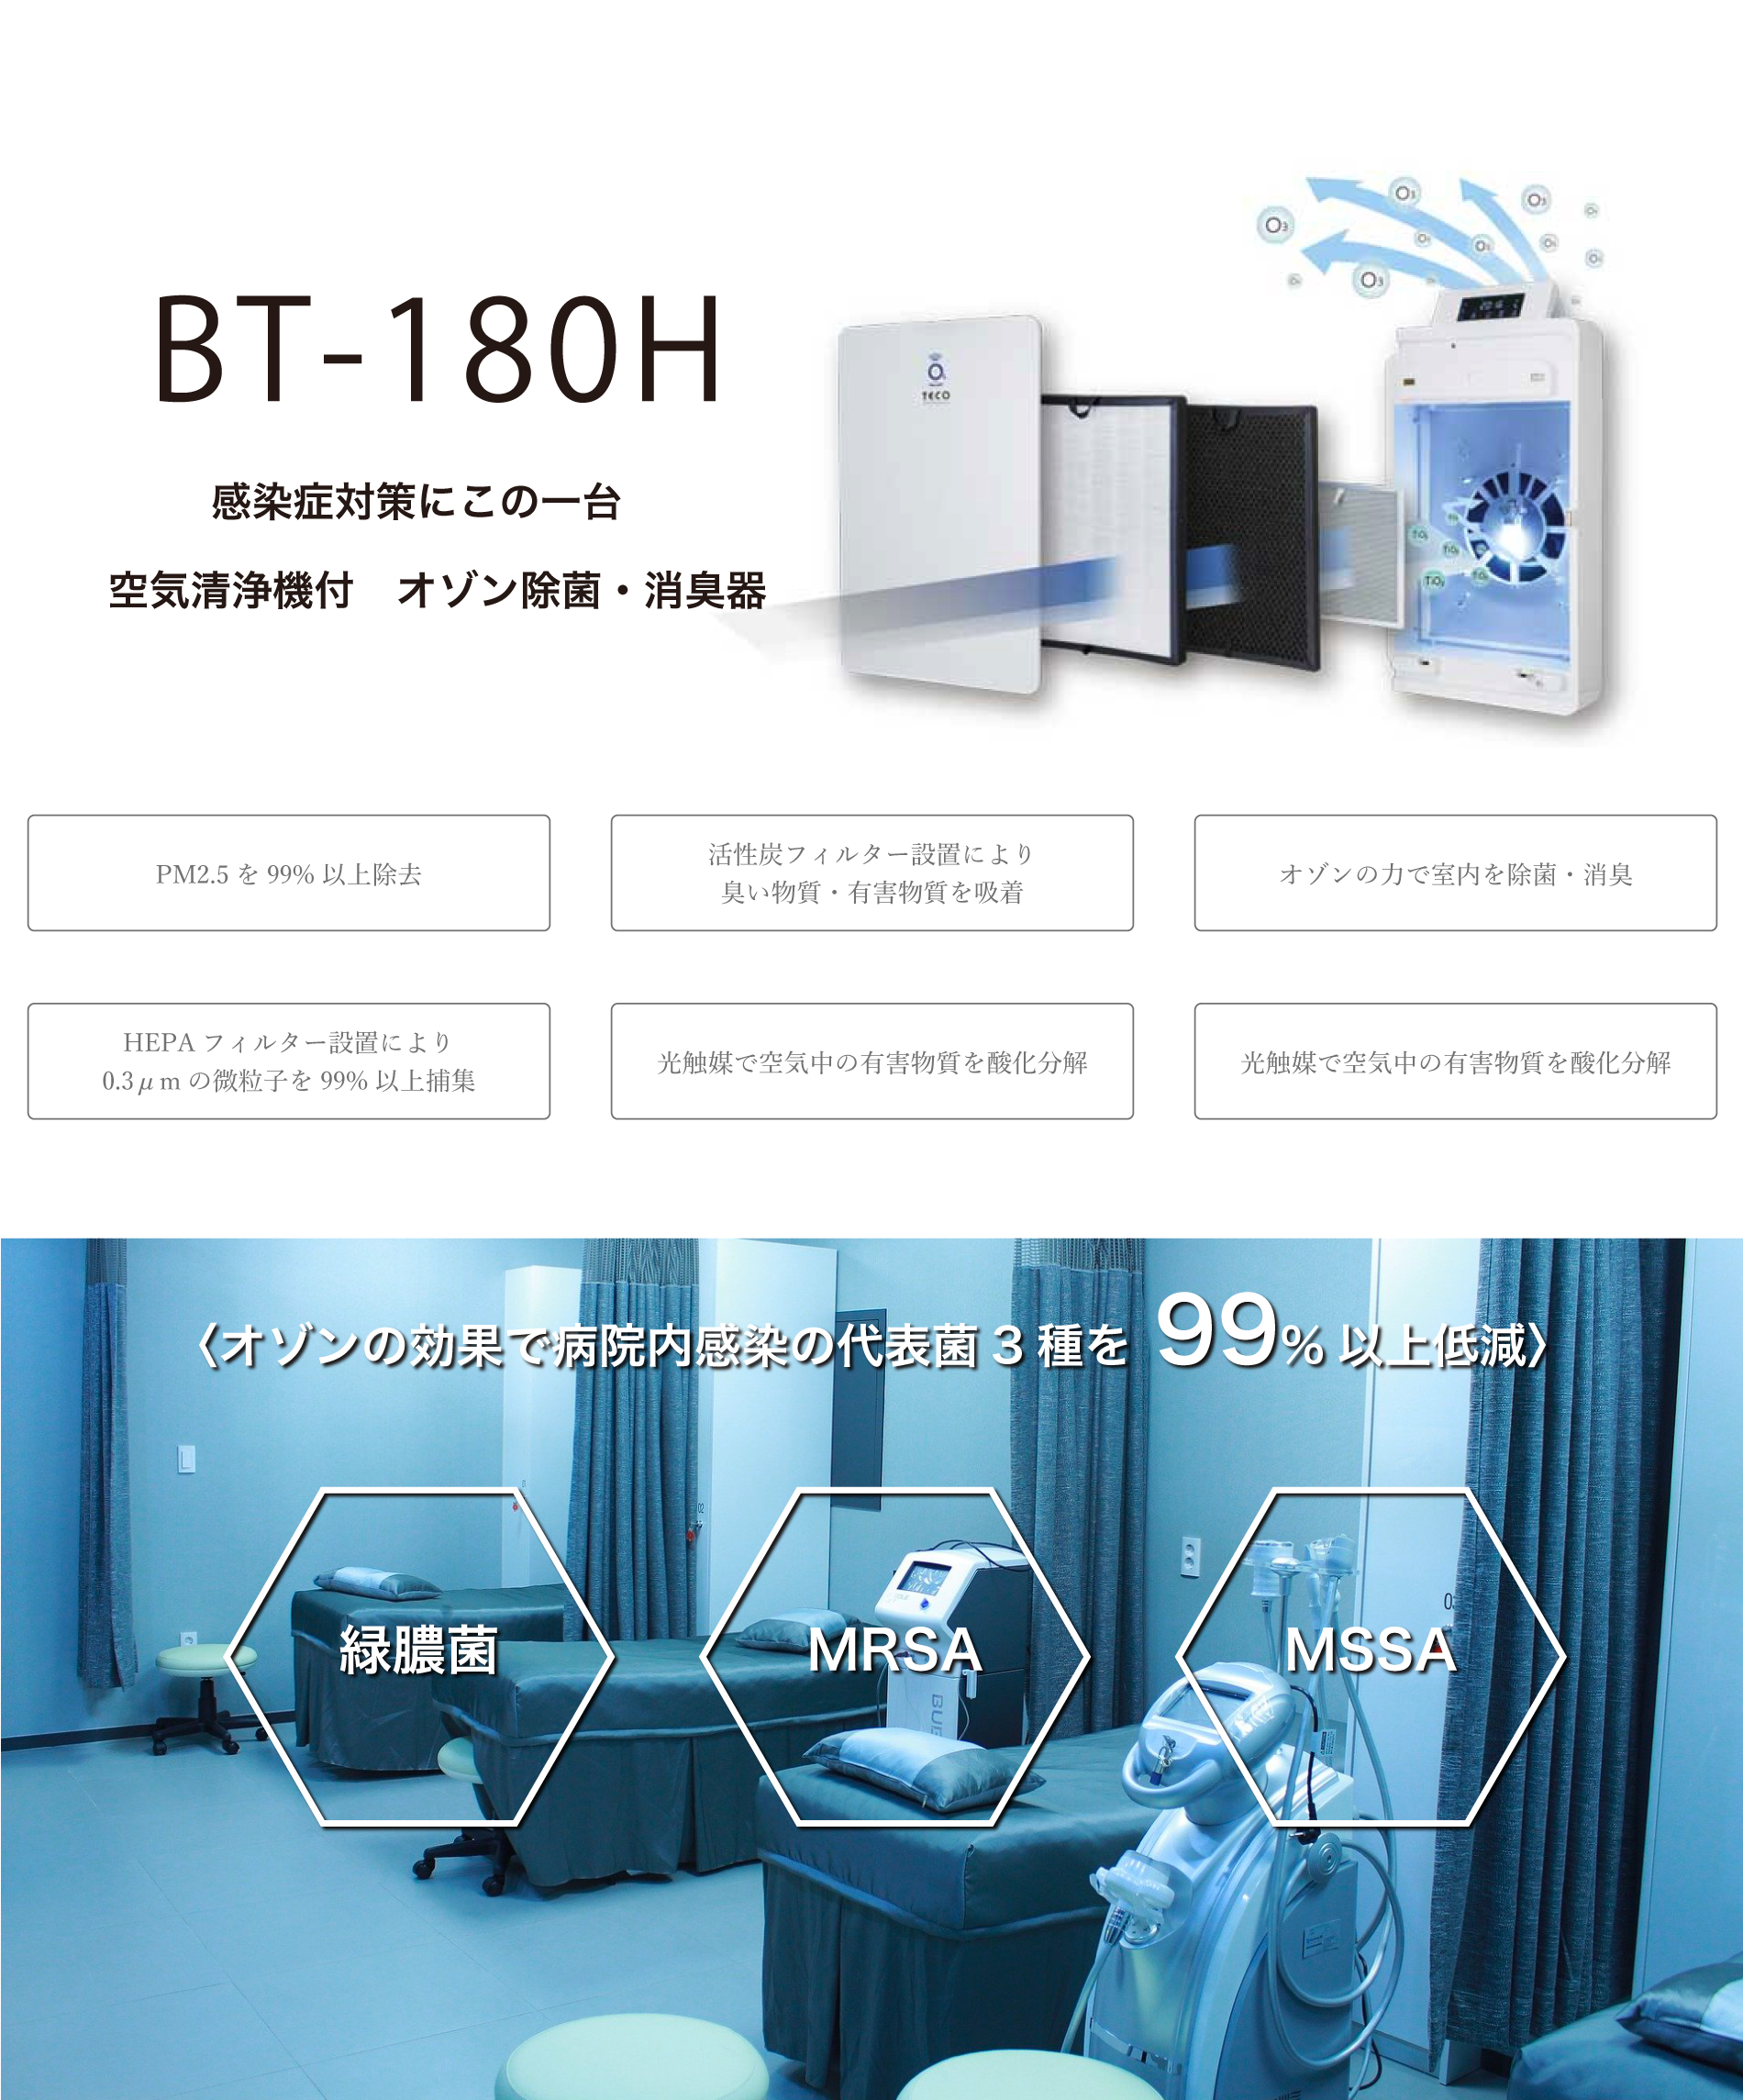 BT-180H | 株式会社A-life